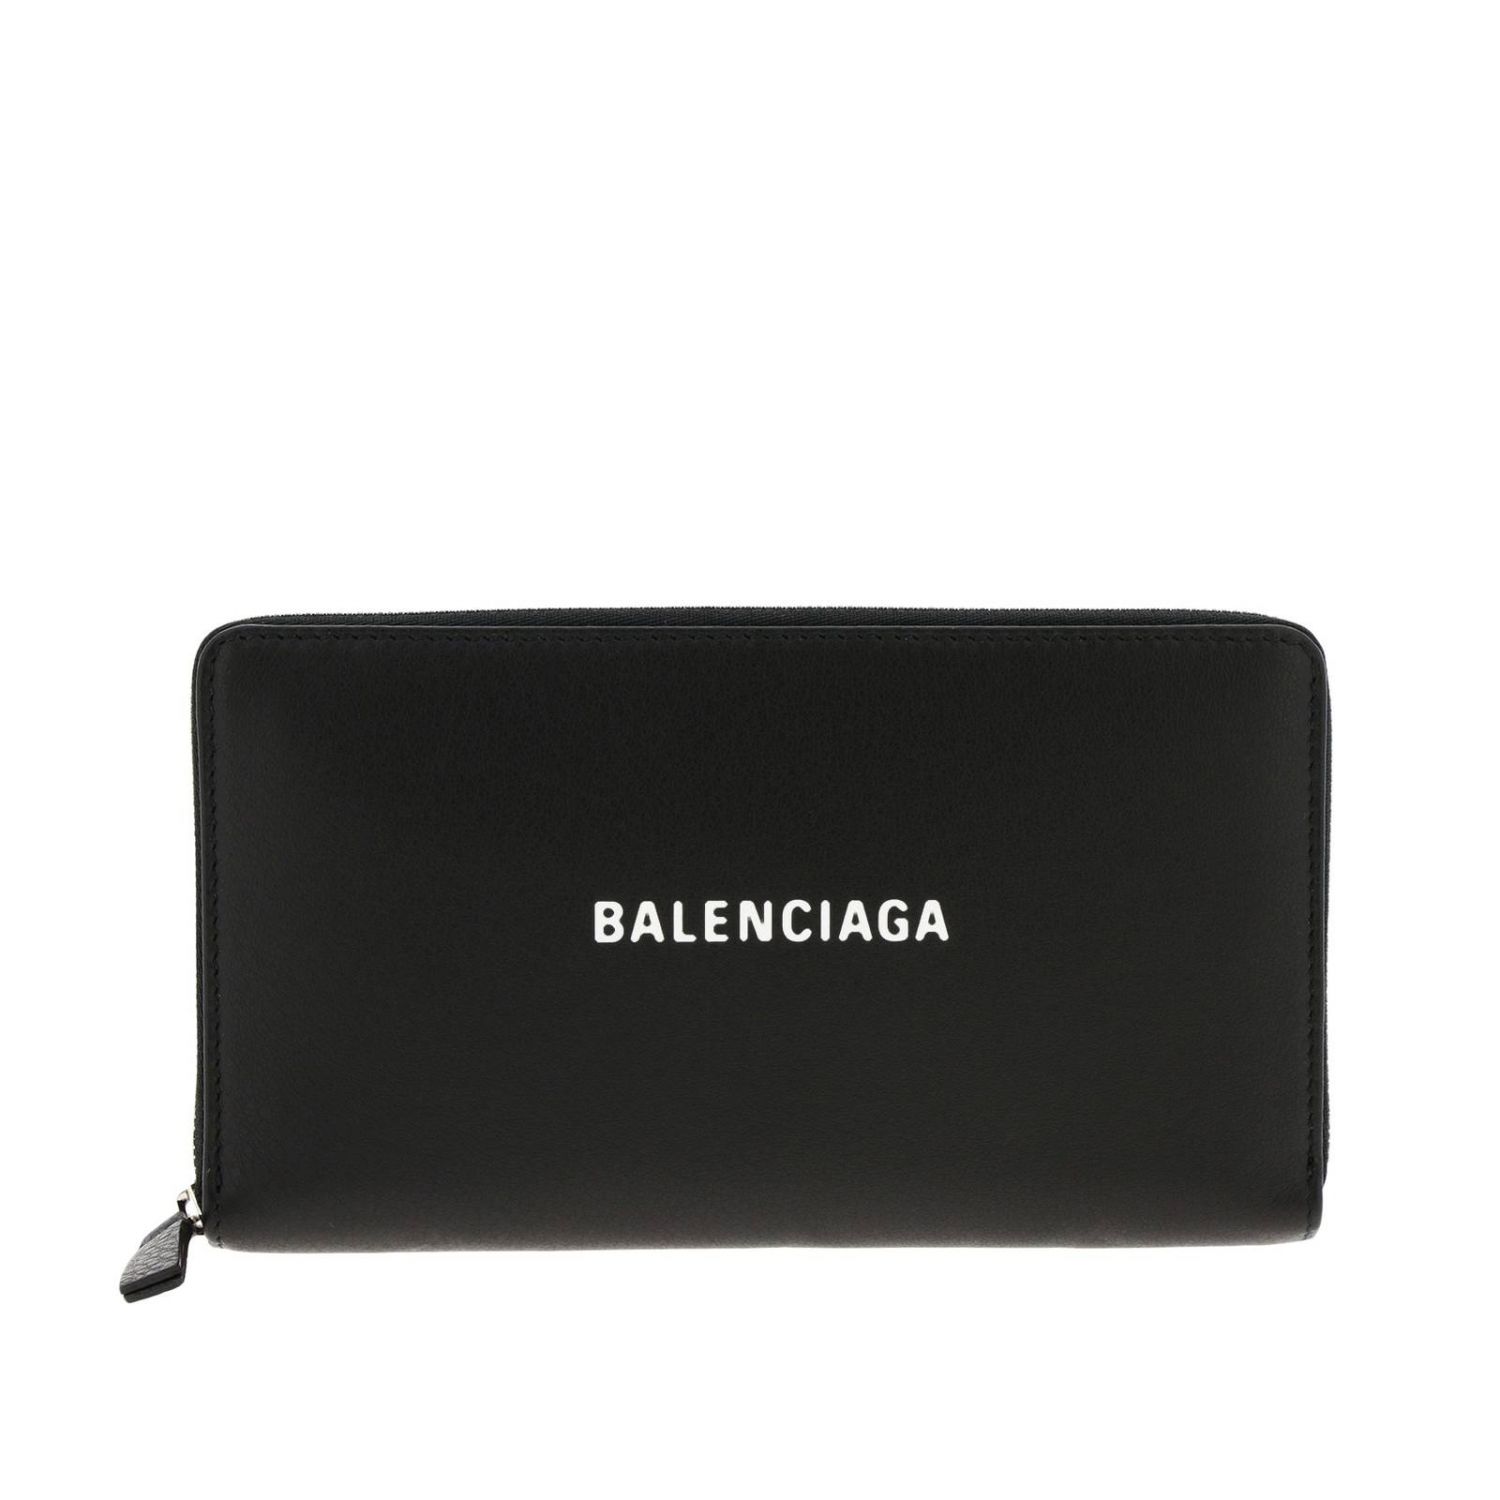 Balenciaga Outlet: wallet for woman - Black | Balenciaga wallet 551935 ...